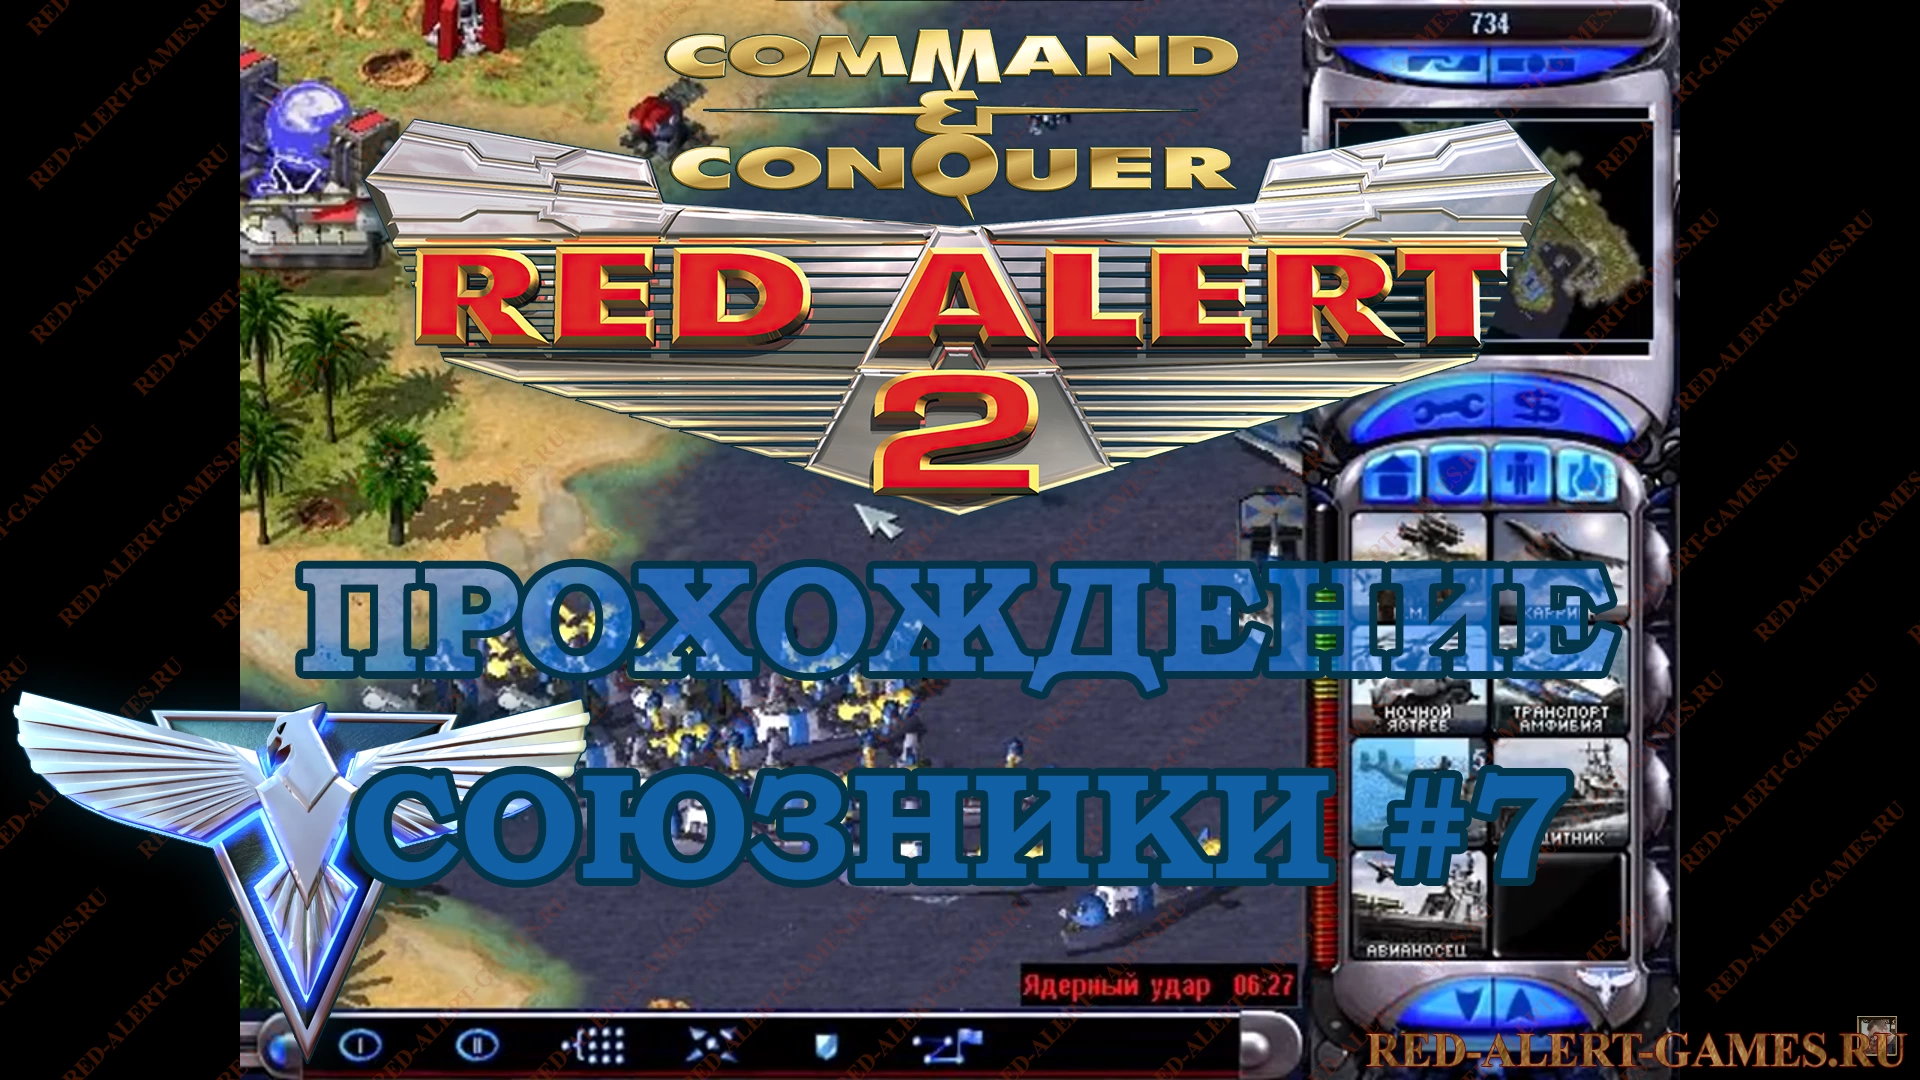 Red Alert 2 Прохождение Союзники - Миссия 7. Глубокое море (Deep Sea)